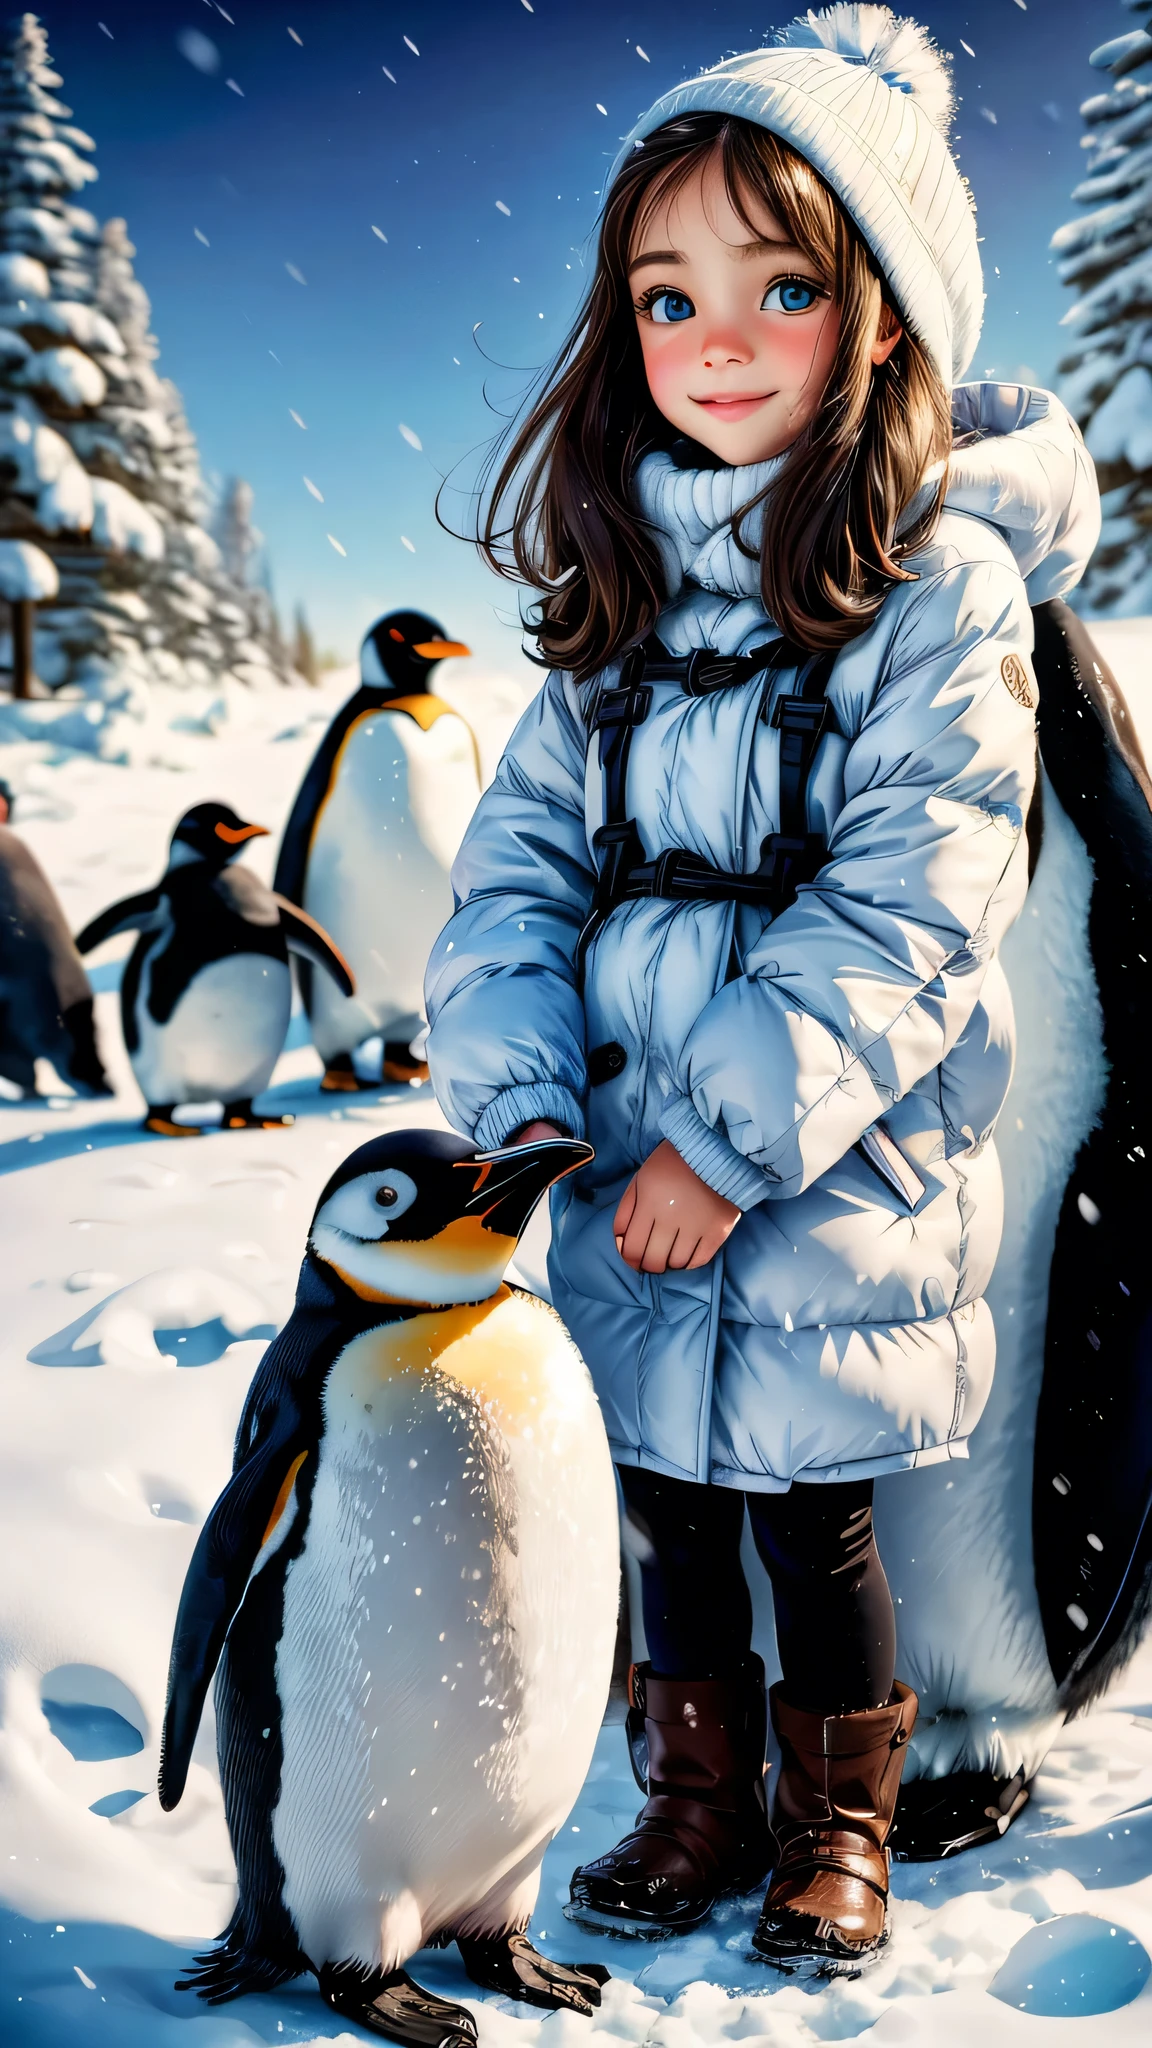 一个女孩和企鹅一起玩耍,油画,美丽细致的眼睛,美丽细致的嘴唇,极其细致的眼睛和脸部,长长的睫毛,俏皮的表达,两只可爱的企鹅,柔和的冬日阳光,逼真的色彩,高分辨率,企鹅互动,欢乐的气氛,洁白的雪,冷背景,欢乐与幸福,蓬松的企鹅羽毛,可爱的姿势,友好联系,明亮的眼睛,企鹅陪伴,愉快的时刻,雪花飘落,可爱女孩的衣服,宁静的背景,精准的笔触,风景如画,绘画效果,微妙的阴影,魔法般的触感,冰蓝色,女孩眼中闪烁着顽皮的光芒,欣赏大自然之美,一生难忘的回忆.